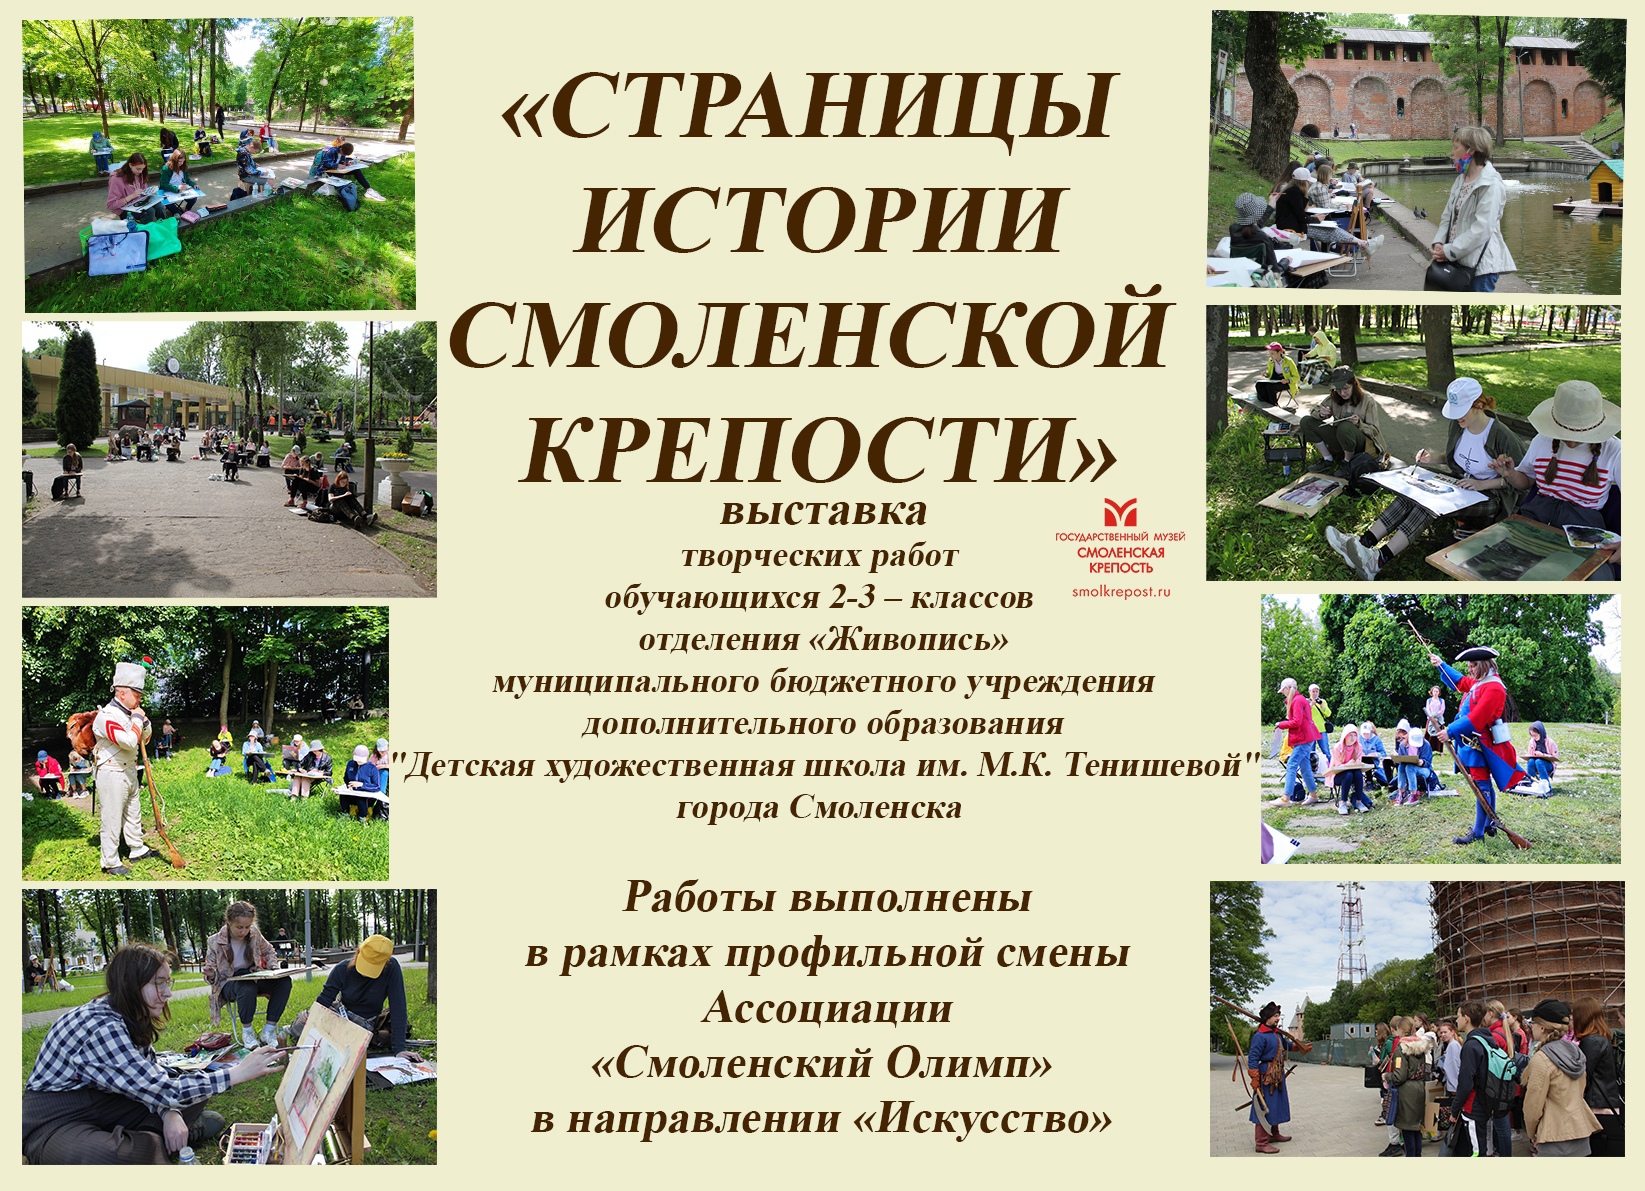 1 сентября - Выставка "Страницы истории Смоленской крепости"